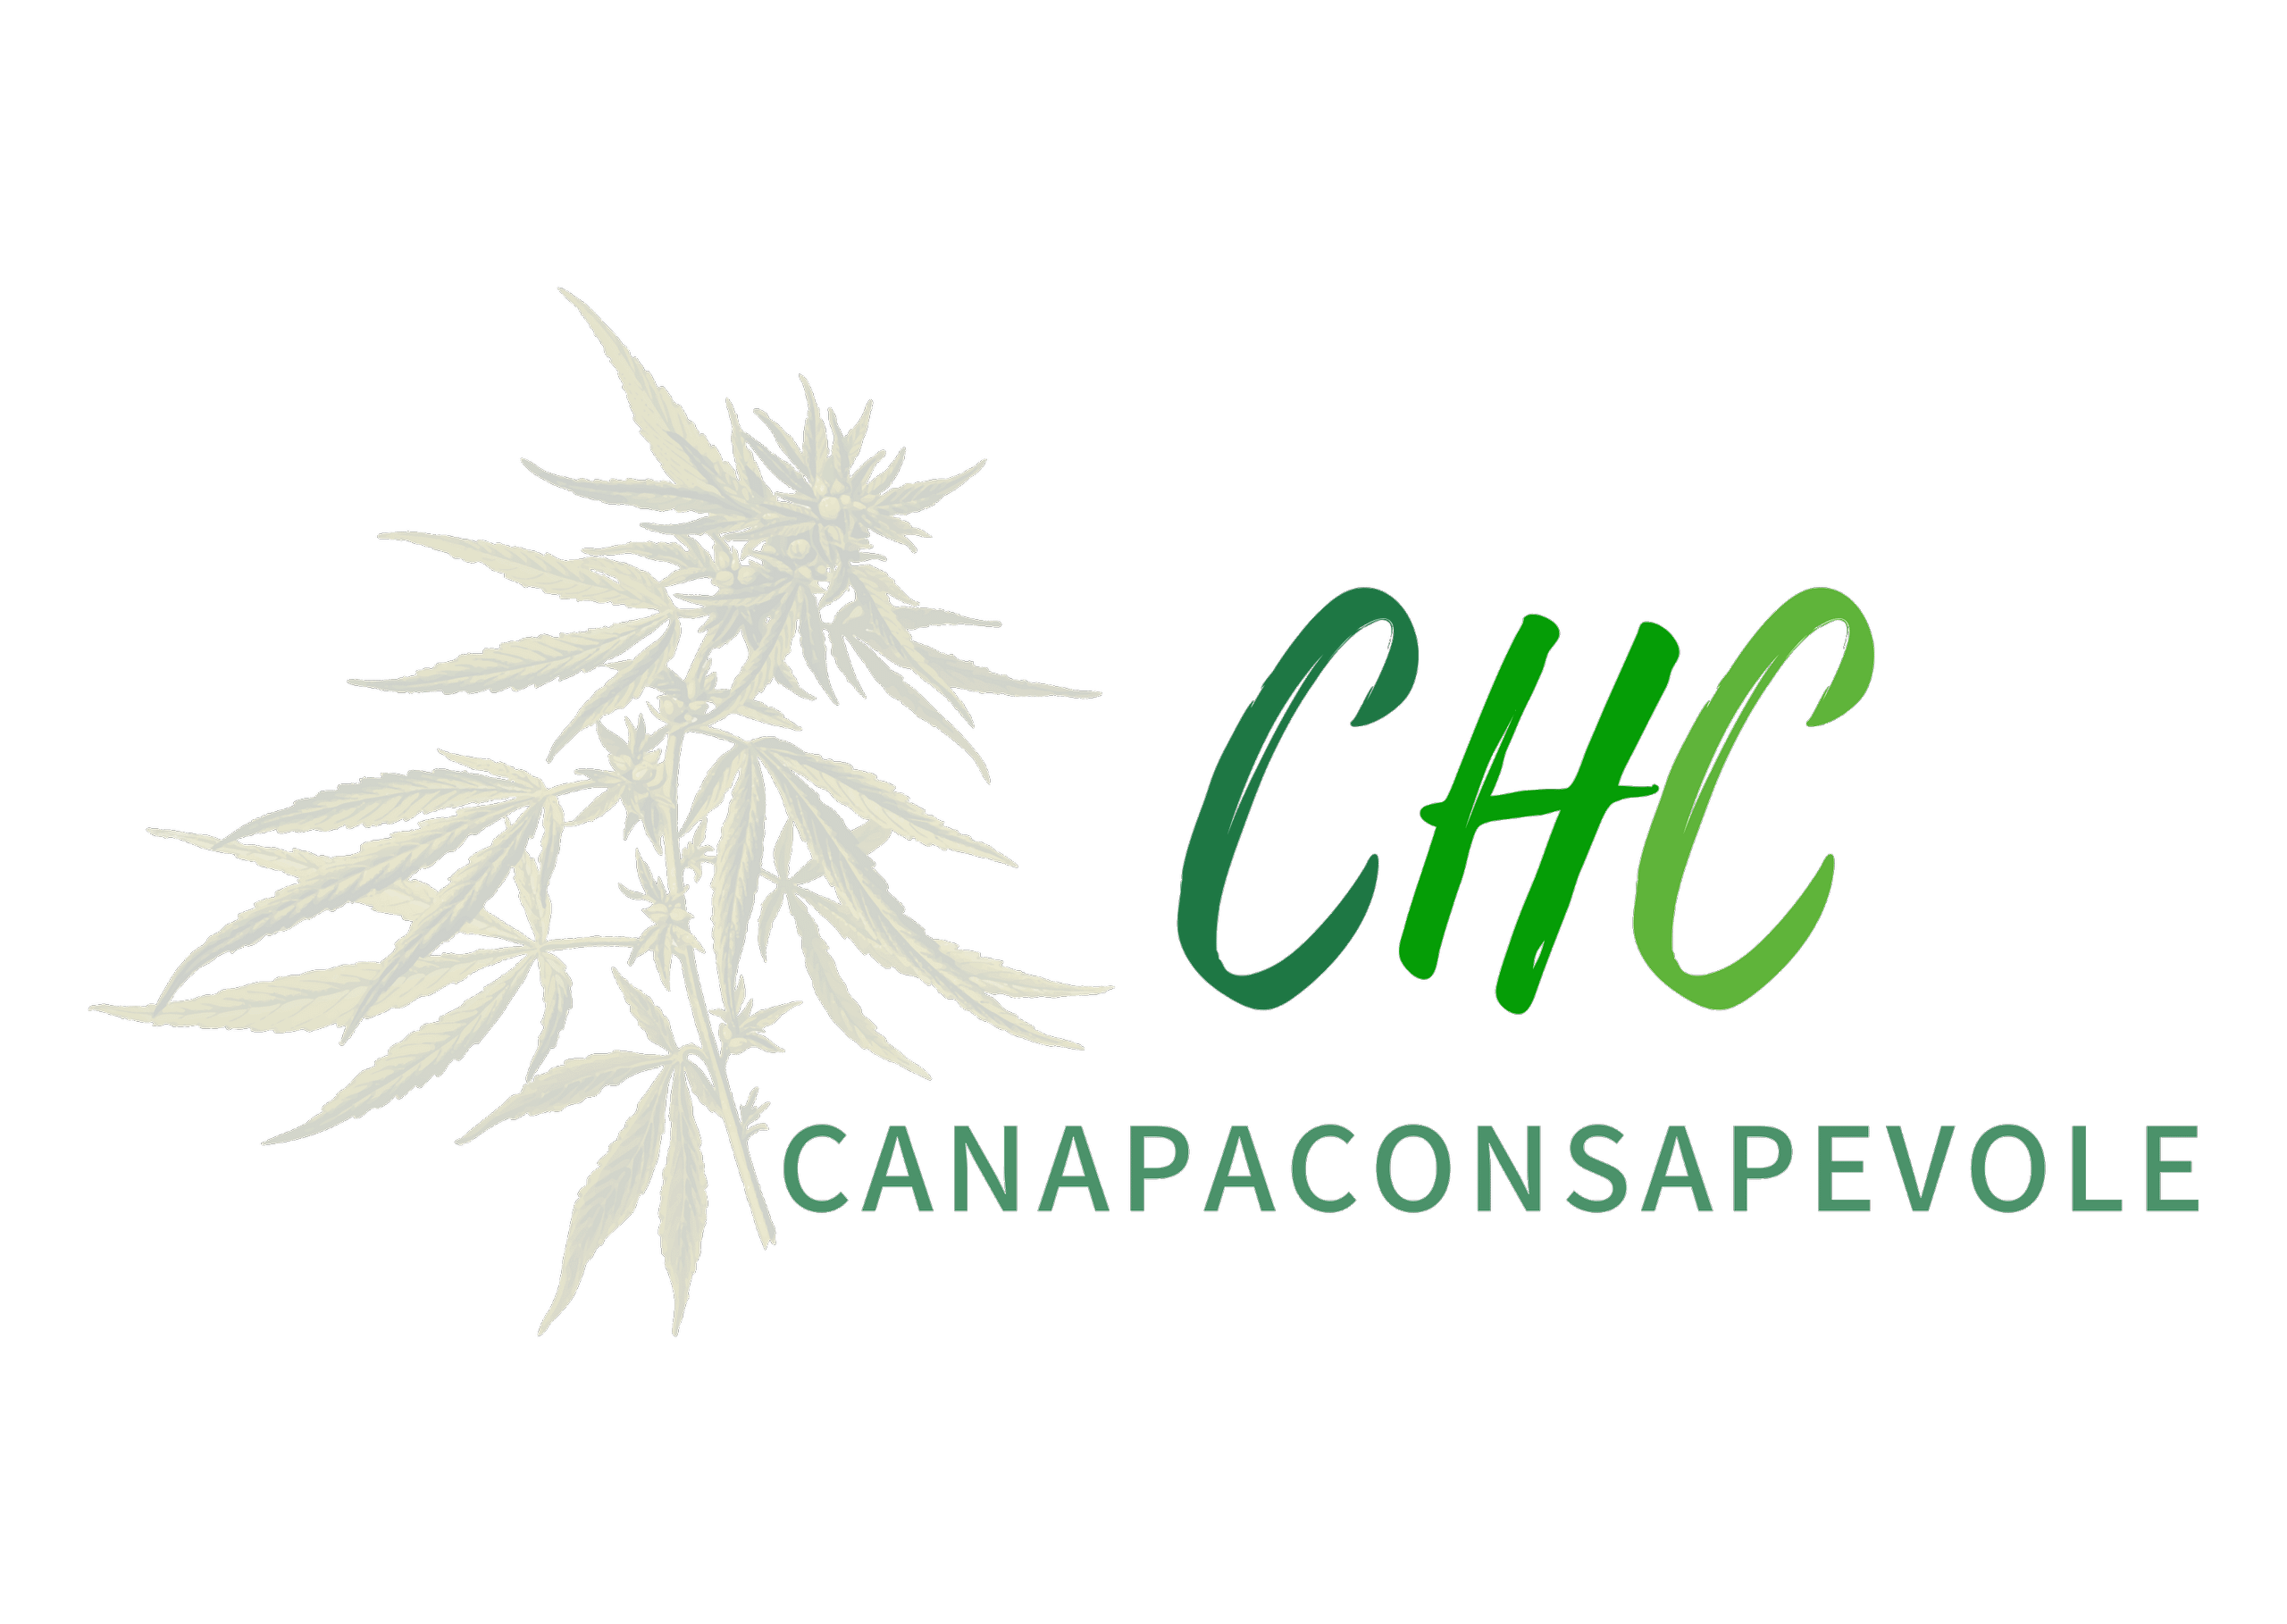 CHC Canapa Consapevole